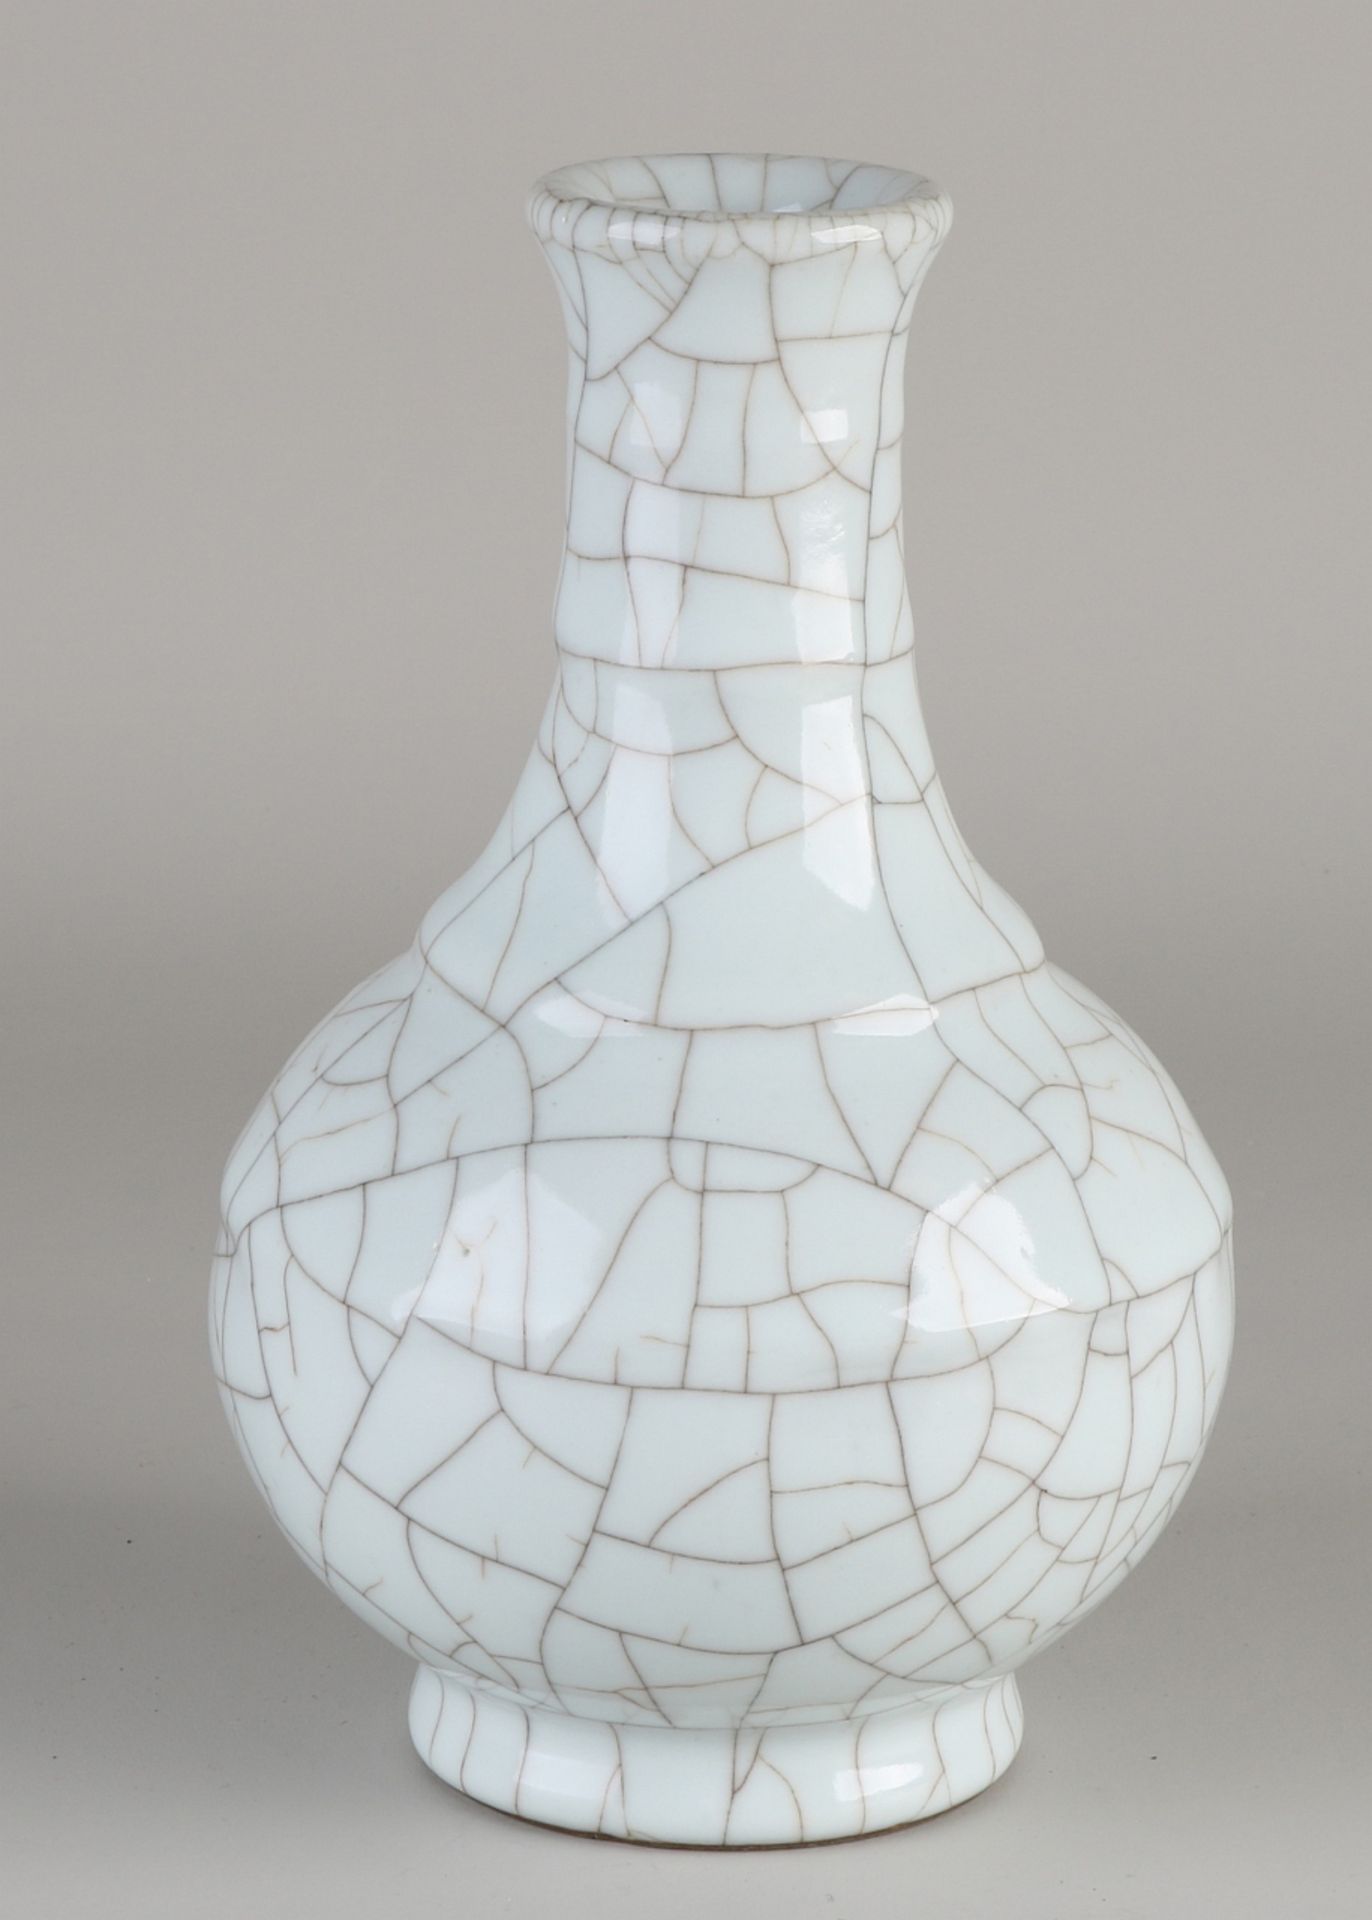 Chinesische Queng Lungenvase aus Porzellan mit weißer Knisternglasur. Abmessungen: H 20 cm. In g